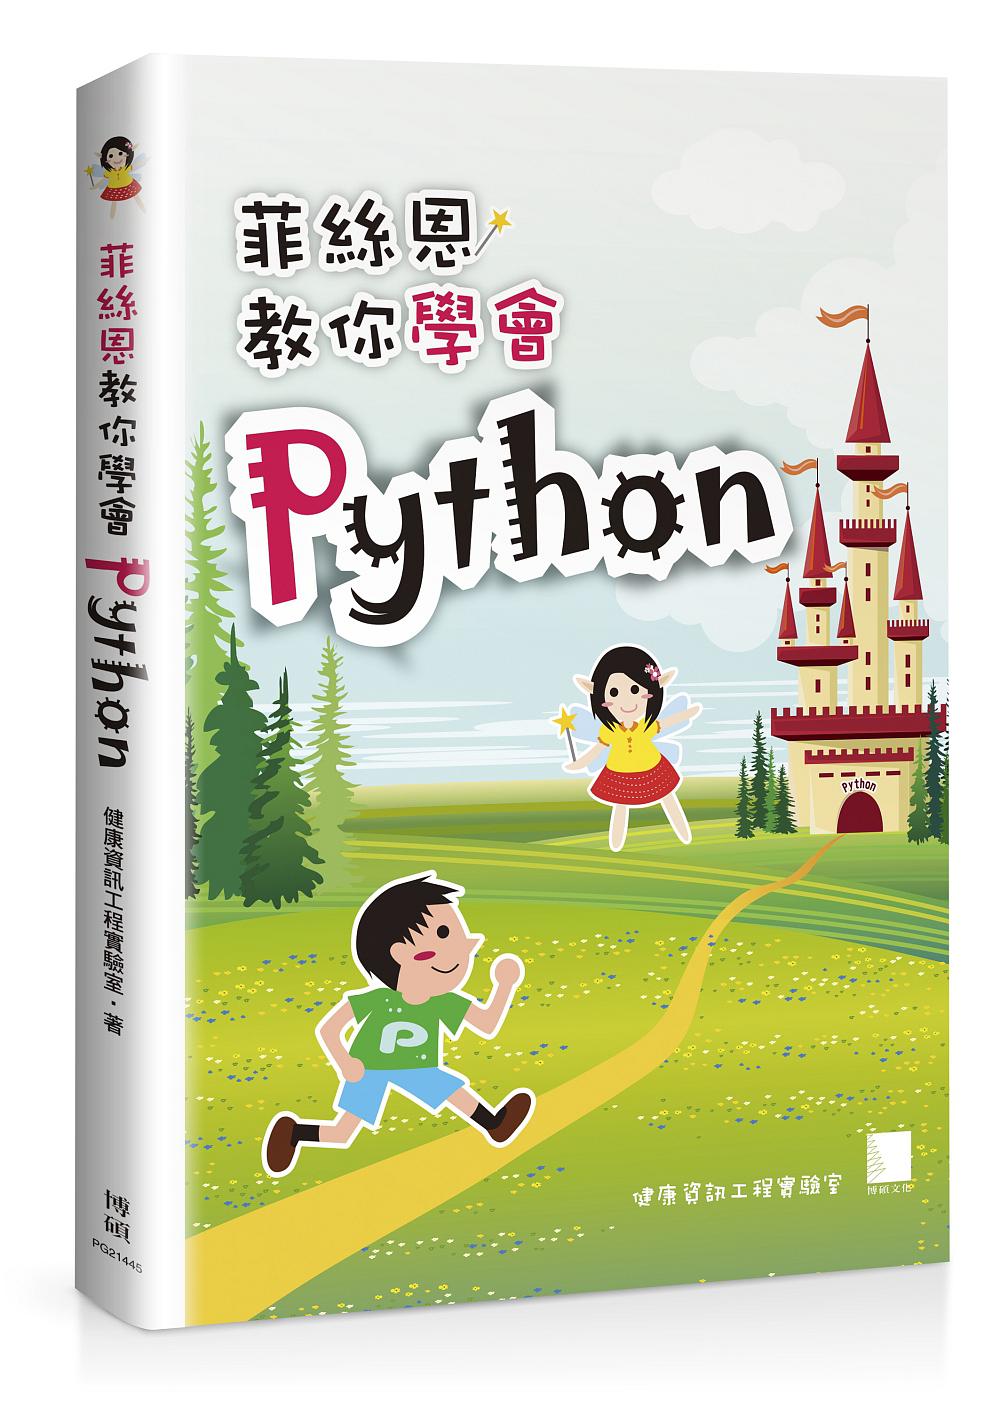 菲絲恩教你學會Python